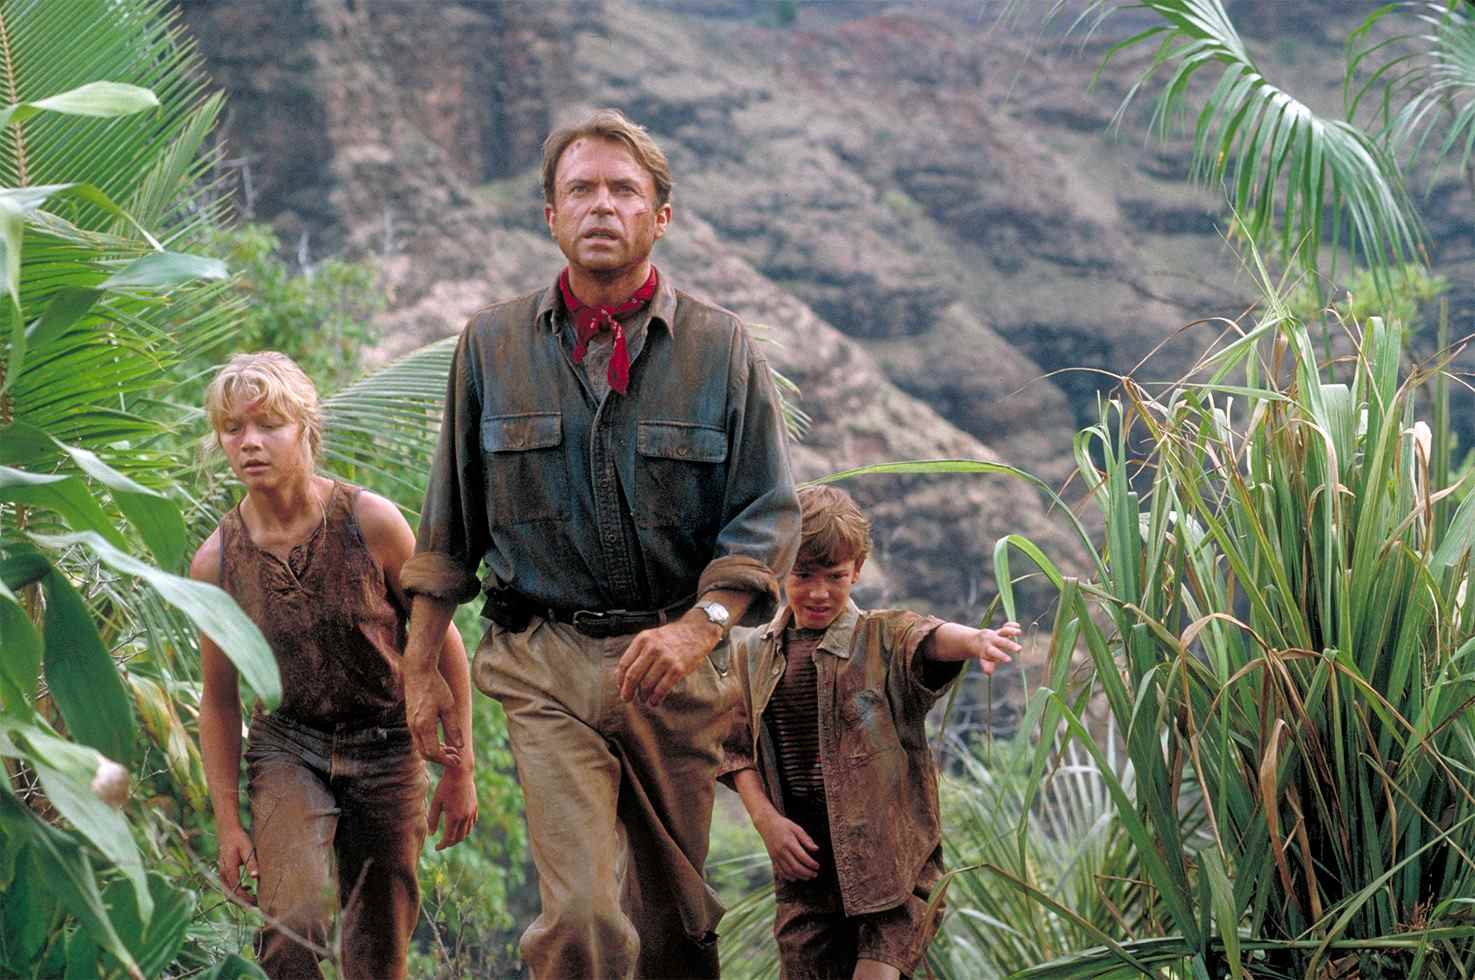 Le film de Steven Spielberg, Jurassic Park, parle de l'évolution de la paternité, de l'importance de la mère, de la question du rôle du père dans la parentalité des parents Grant Tim Lex